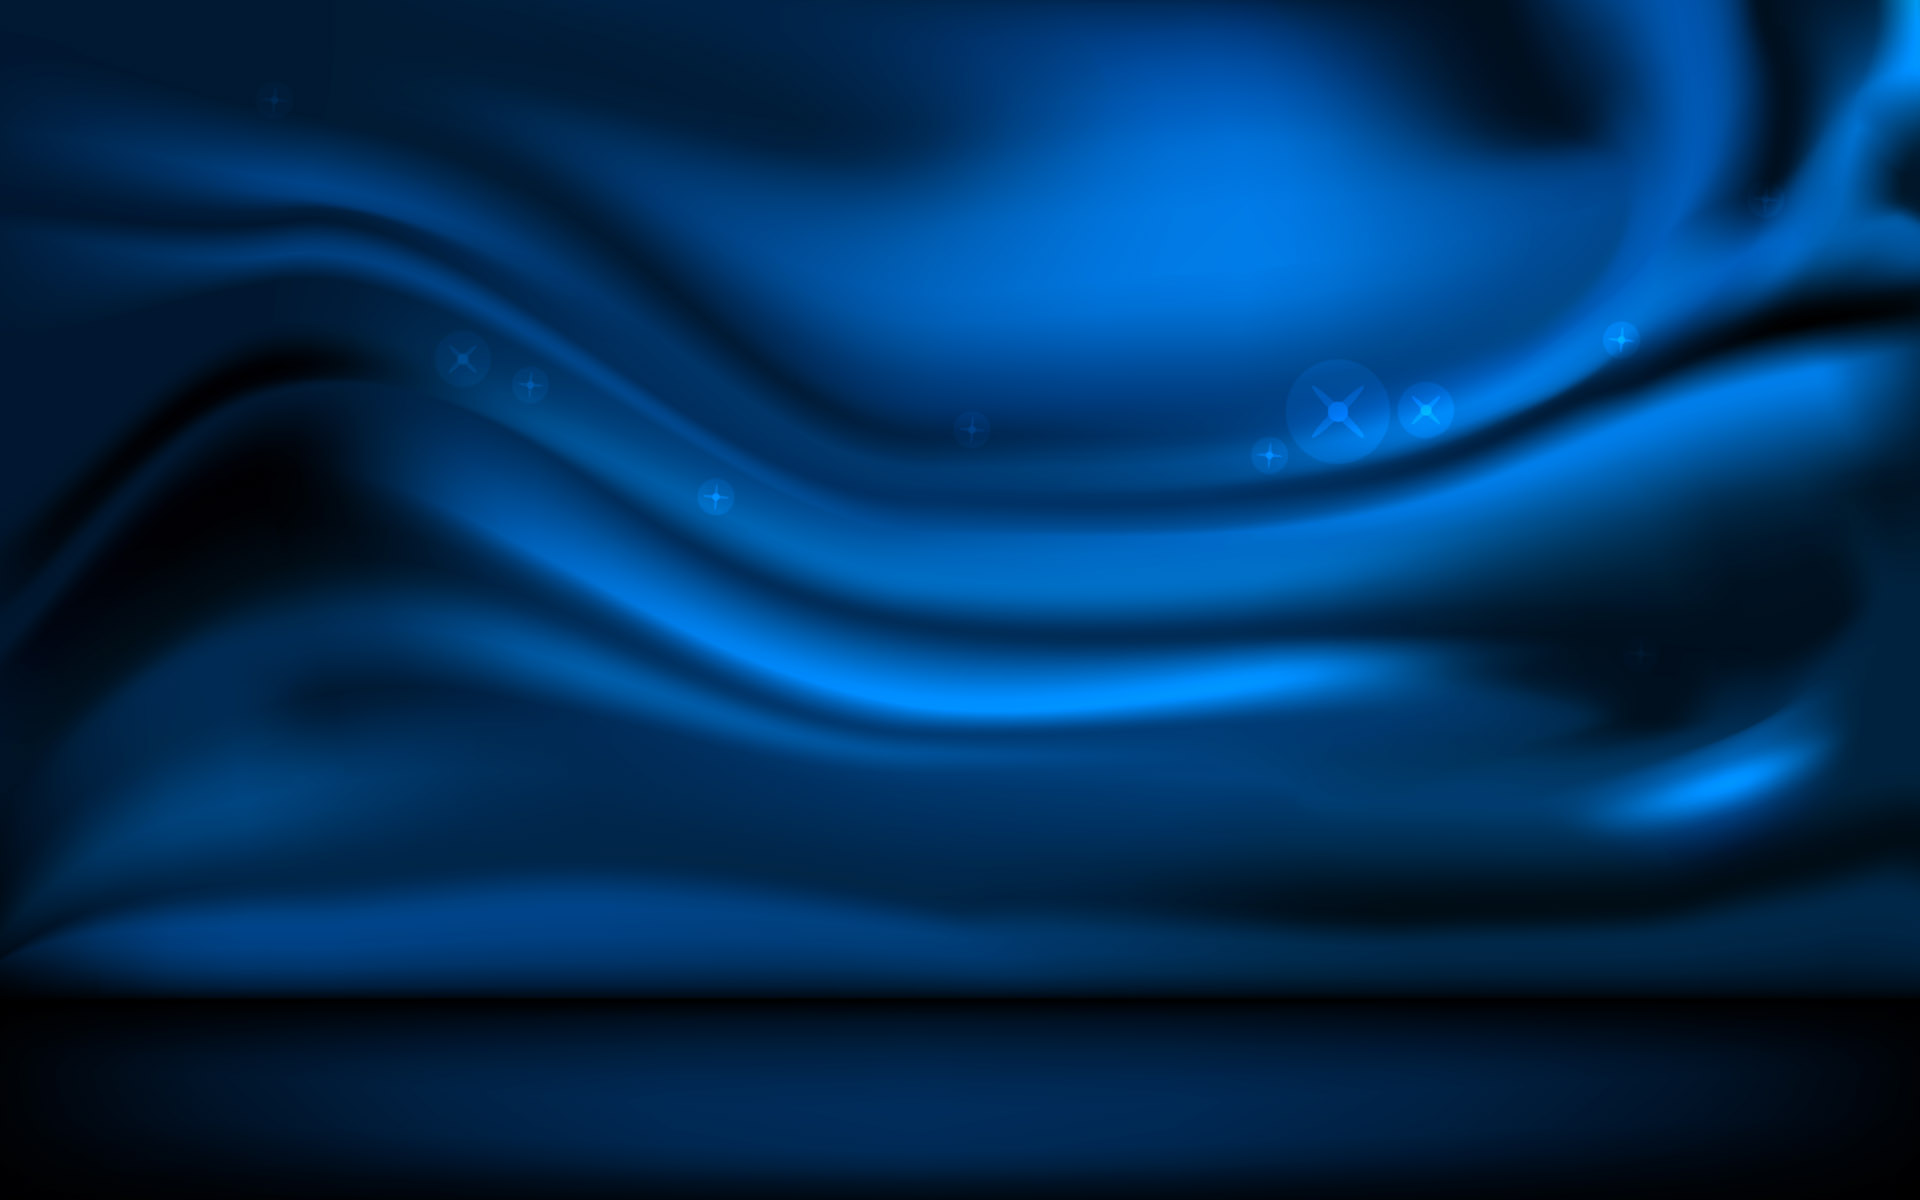  Dark  Blue  Wallpapers  HD  WallpaperSafari